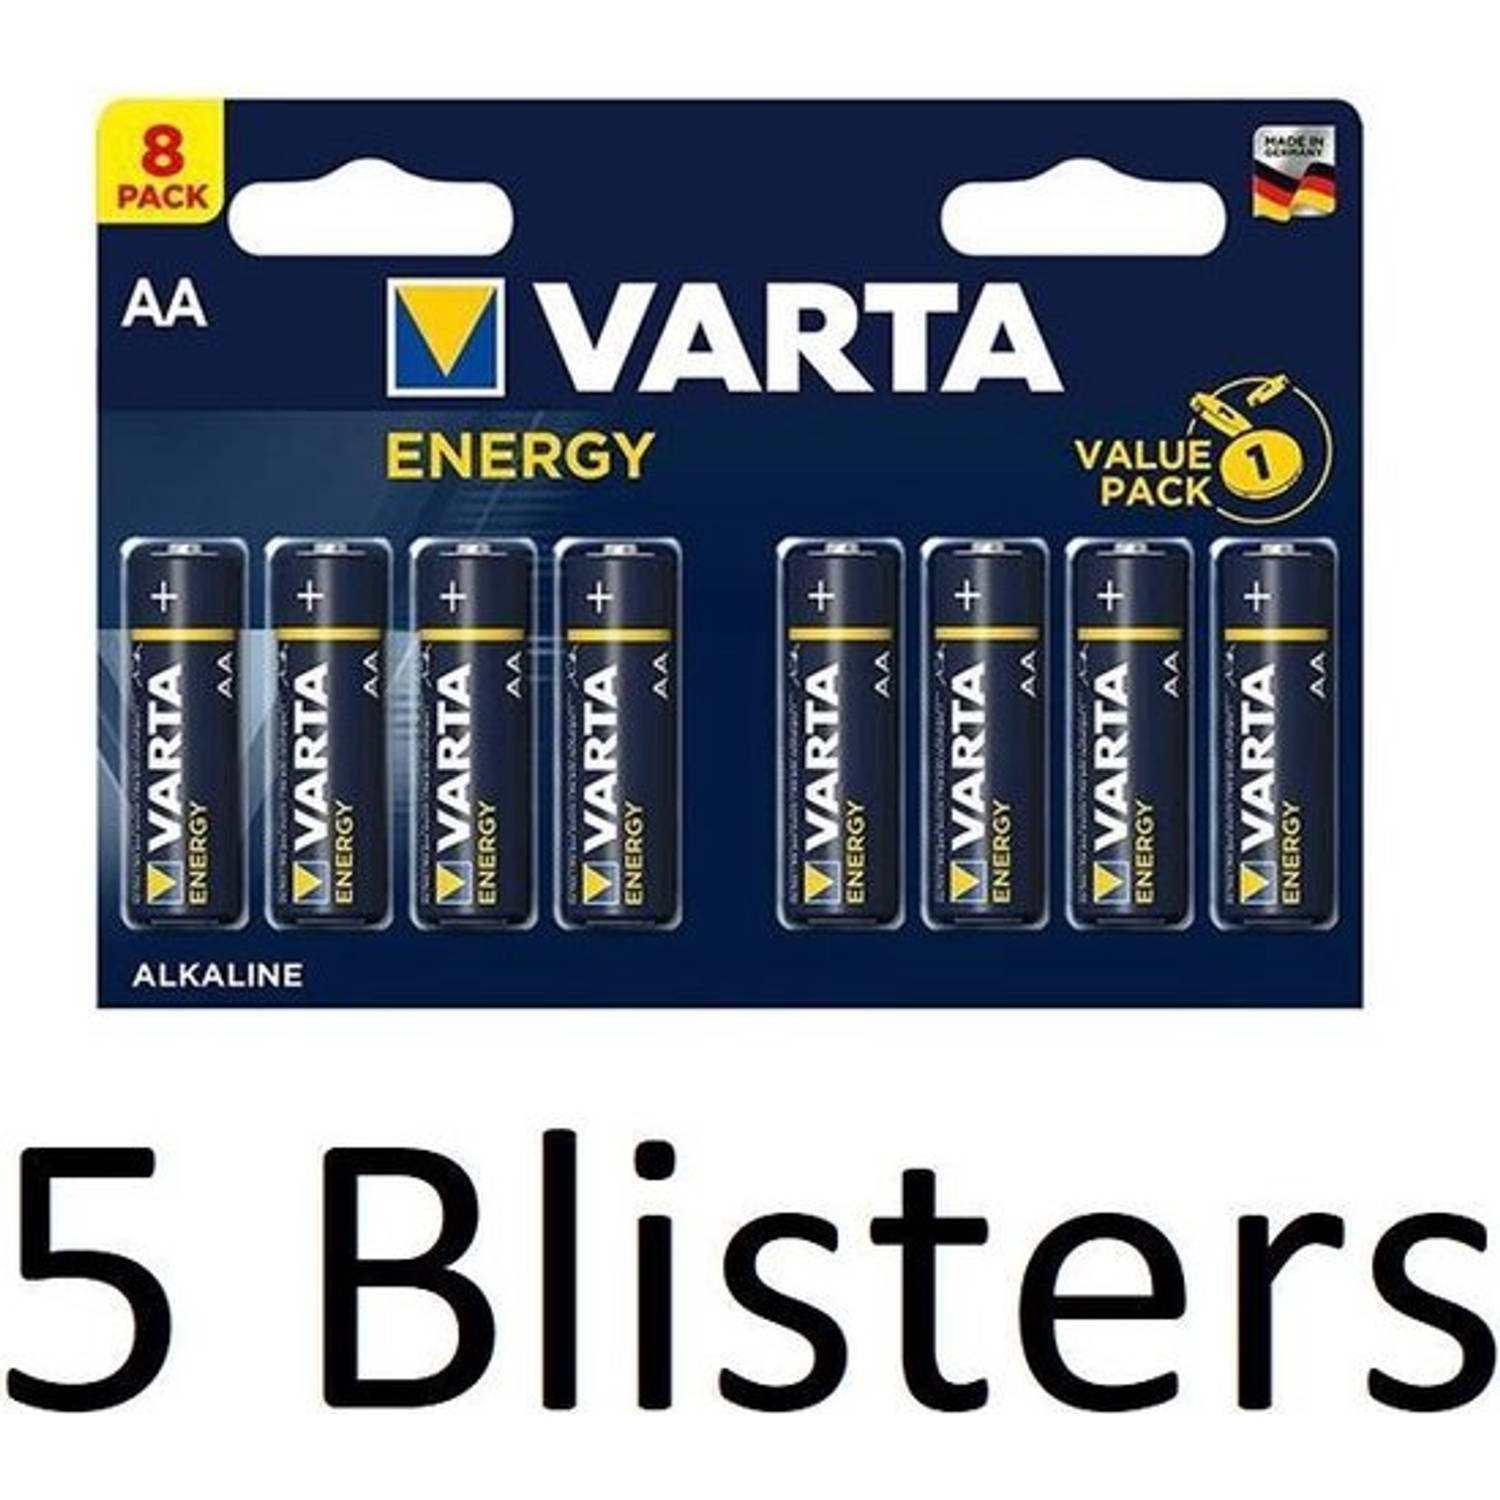 Varta 40 Stuks (5 Blisters A 8 St) Energy Aa Alkaline Batterijen